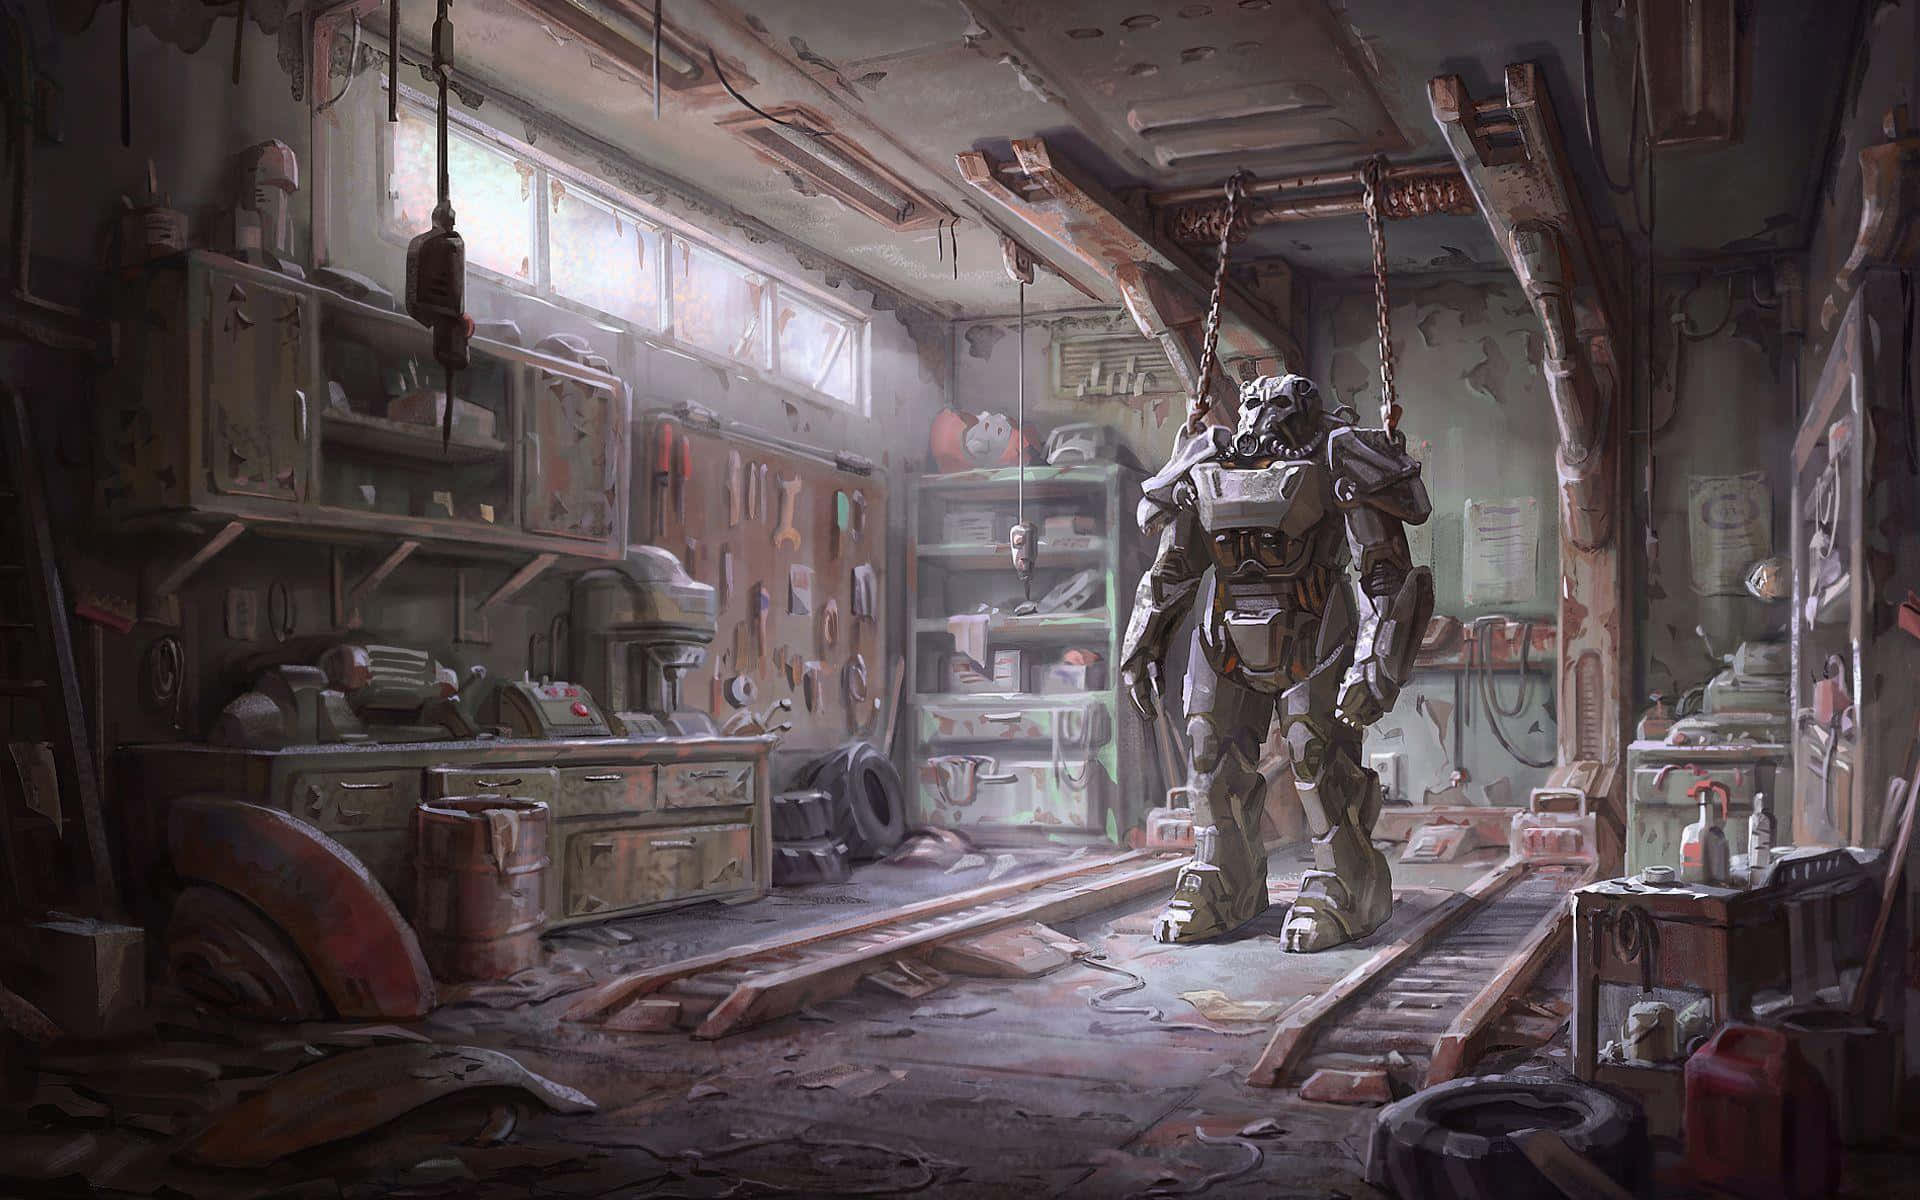 Willkommenin Der Ödnis Fallout Nv Wallpaper